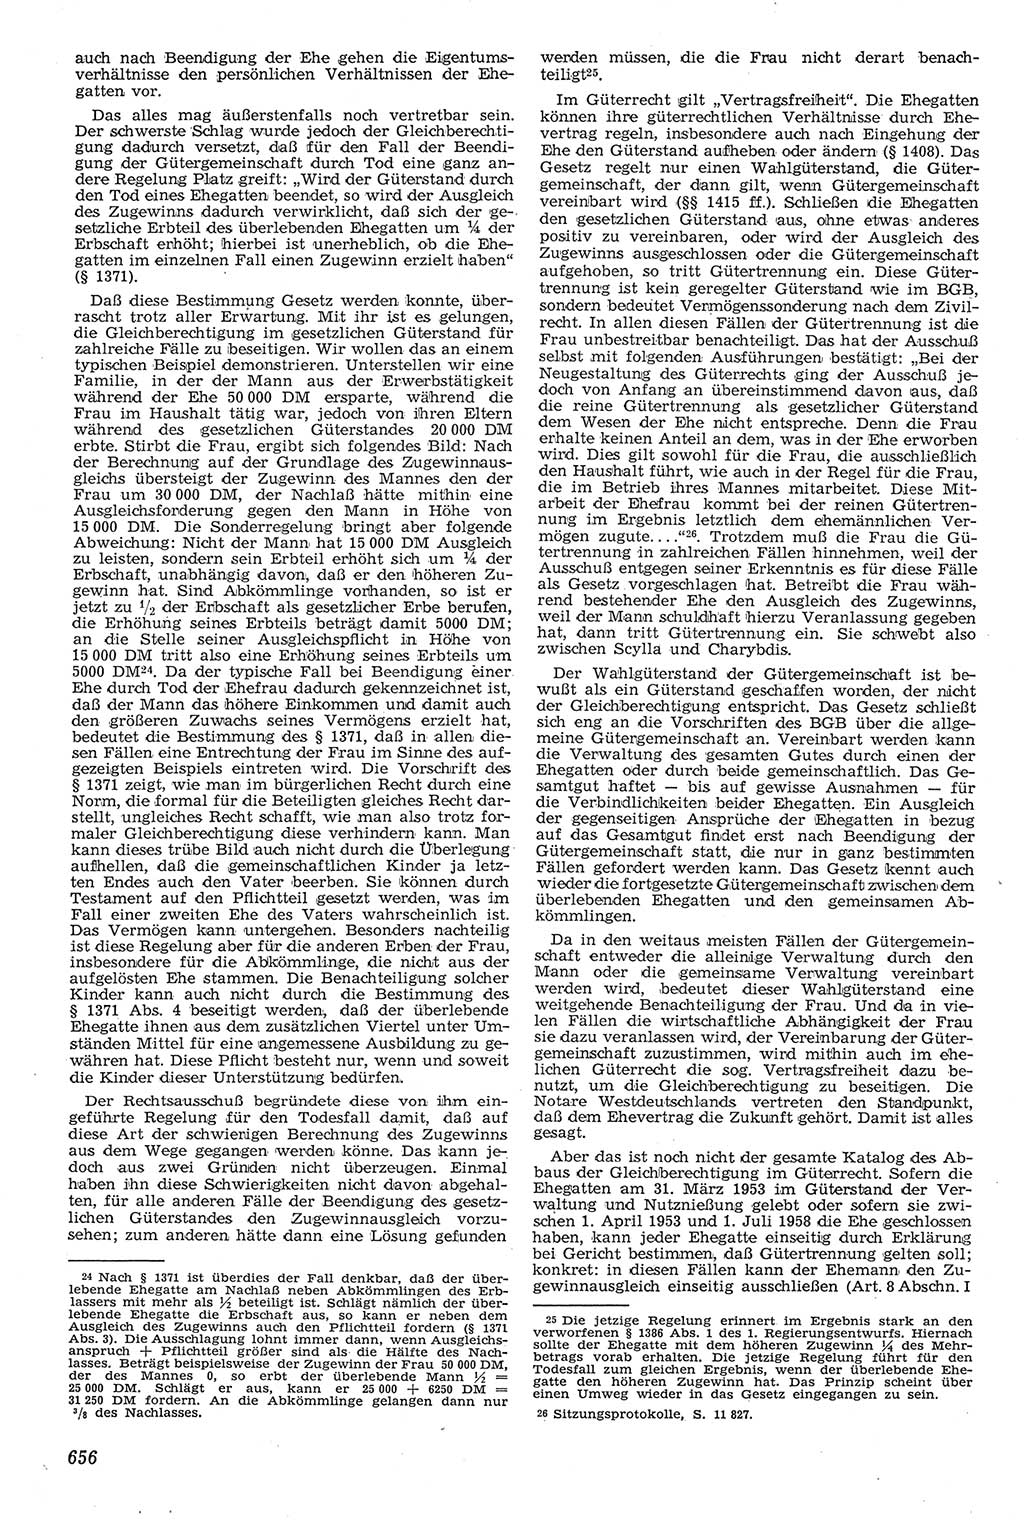 Neue Justiz (NJ), Zeitschrift für Recht und Rechtswissenschaft [Deutsche Demokratische Republik (DDR)], 11. Jahrgang 1957, Seite 656 (NJ DDR 1957, S. 656)